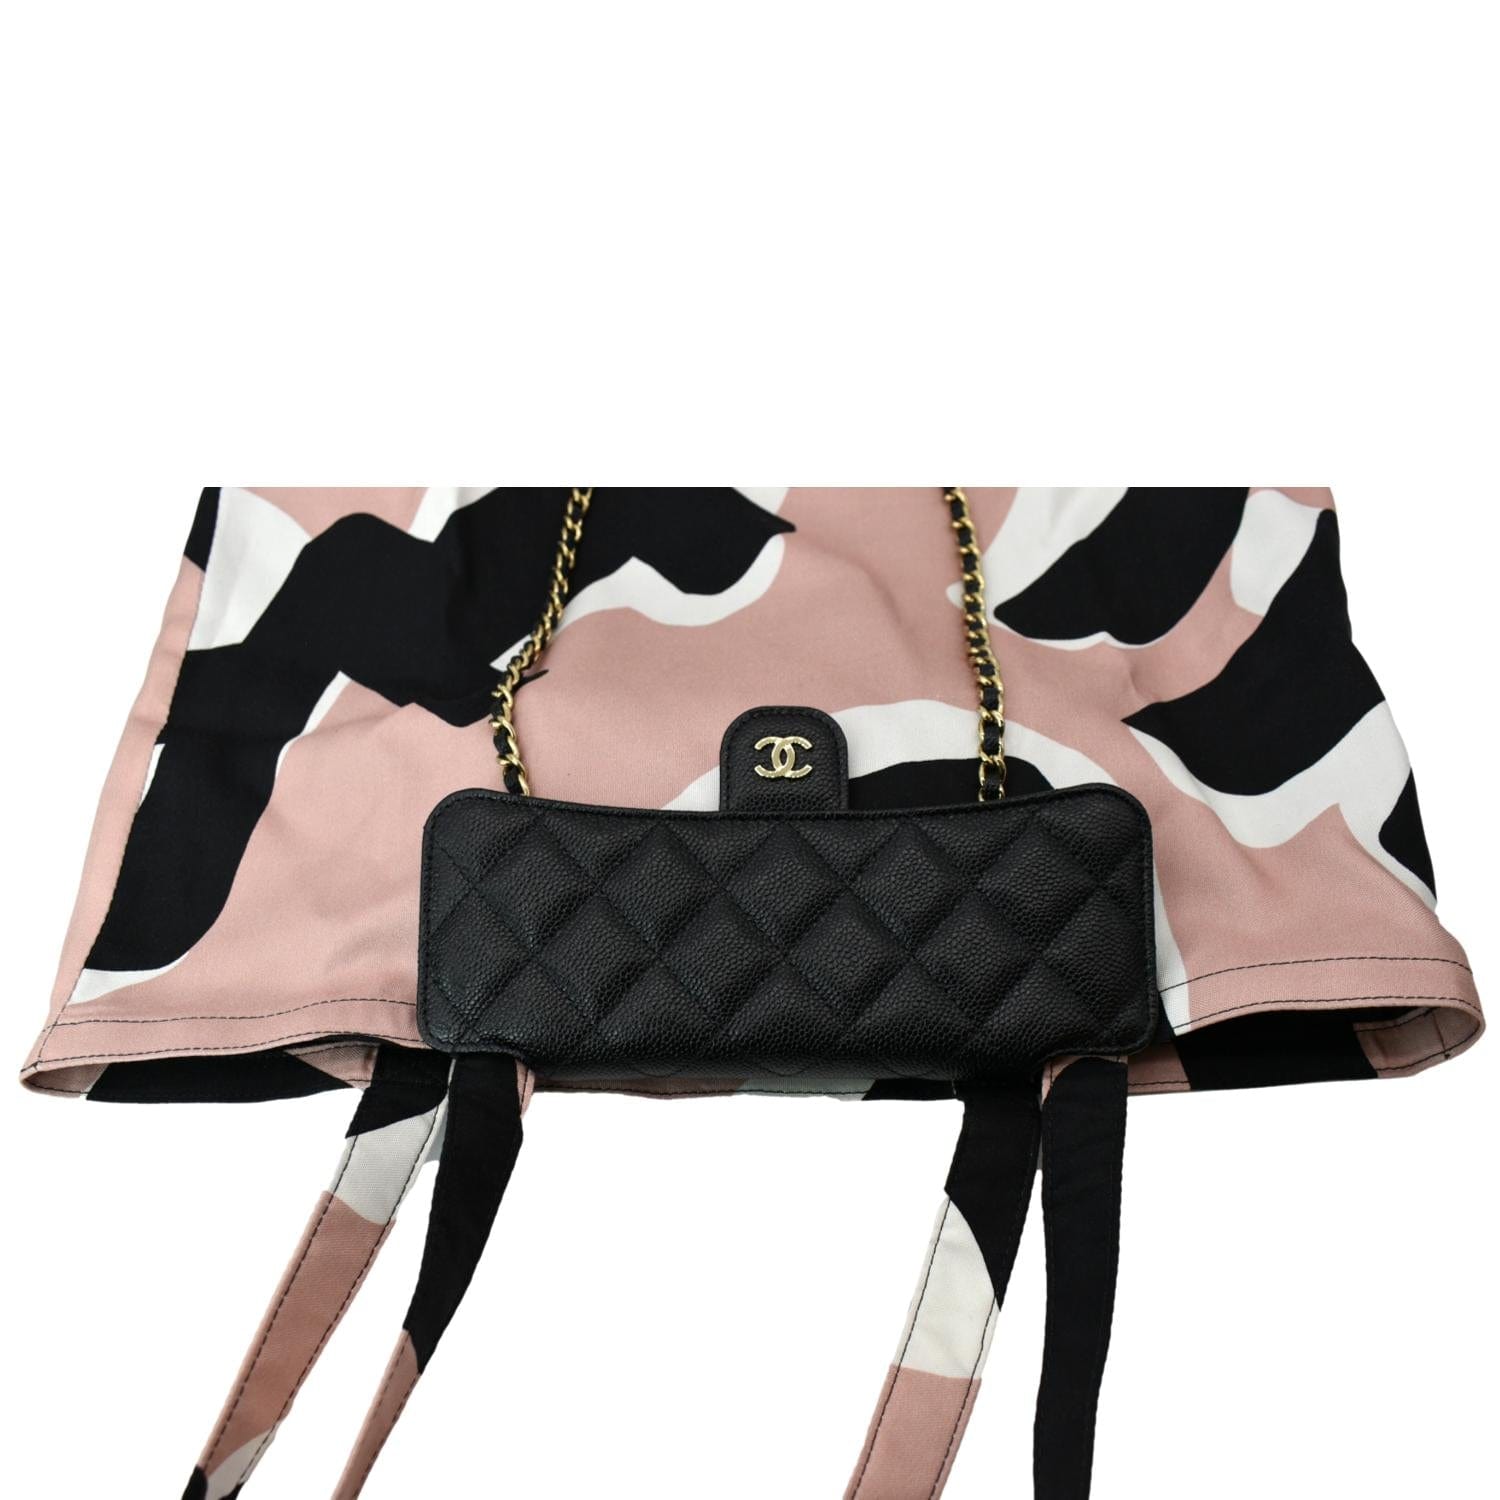 Chloe Paris. Black Pebble Grain Leather 2 Way Shoulderbag/Handbag